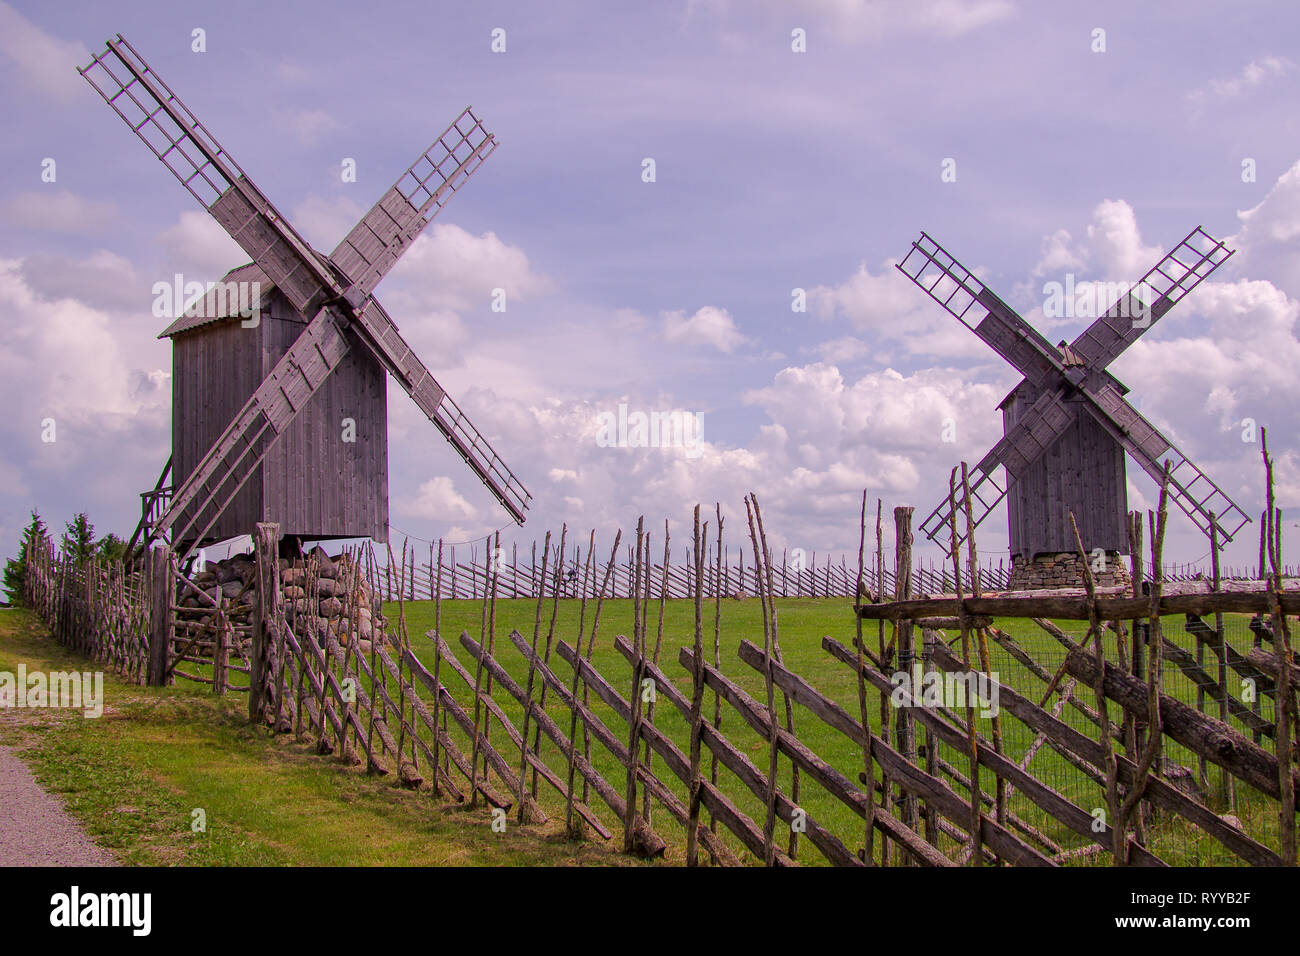 Tréteaux traditionnels moulins à vent Moulin à vent en Angla park sur l'île de Saaremaa en Estonie Banque D'Images